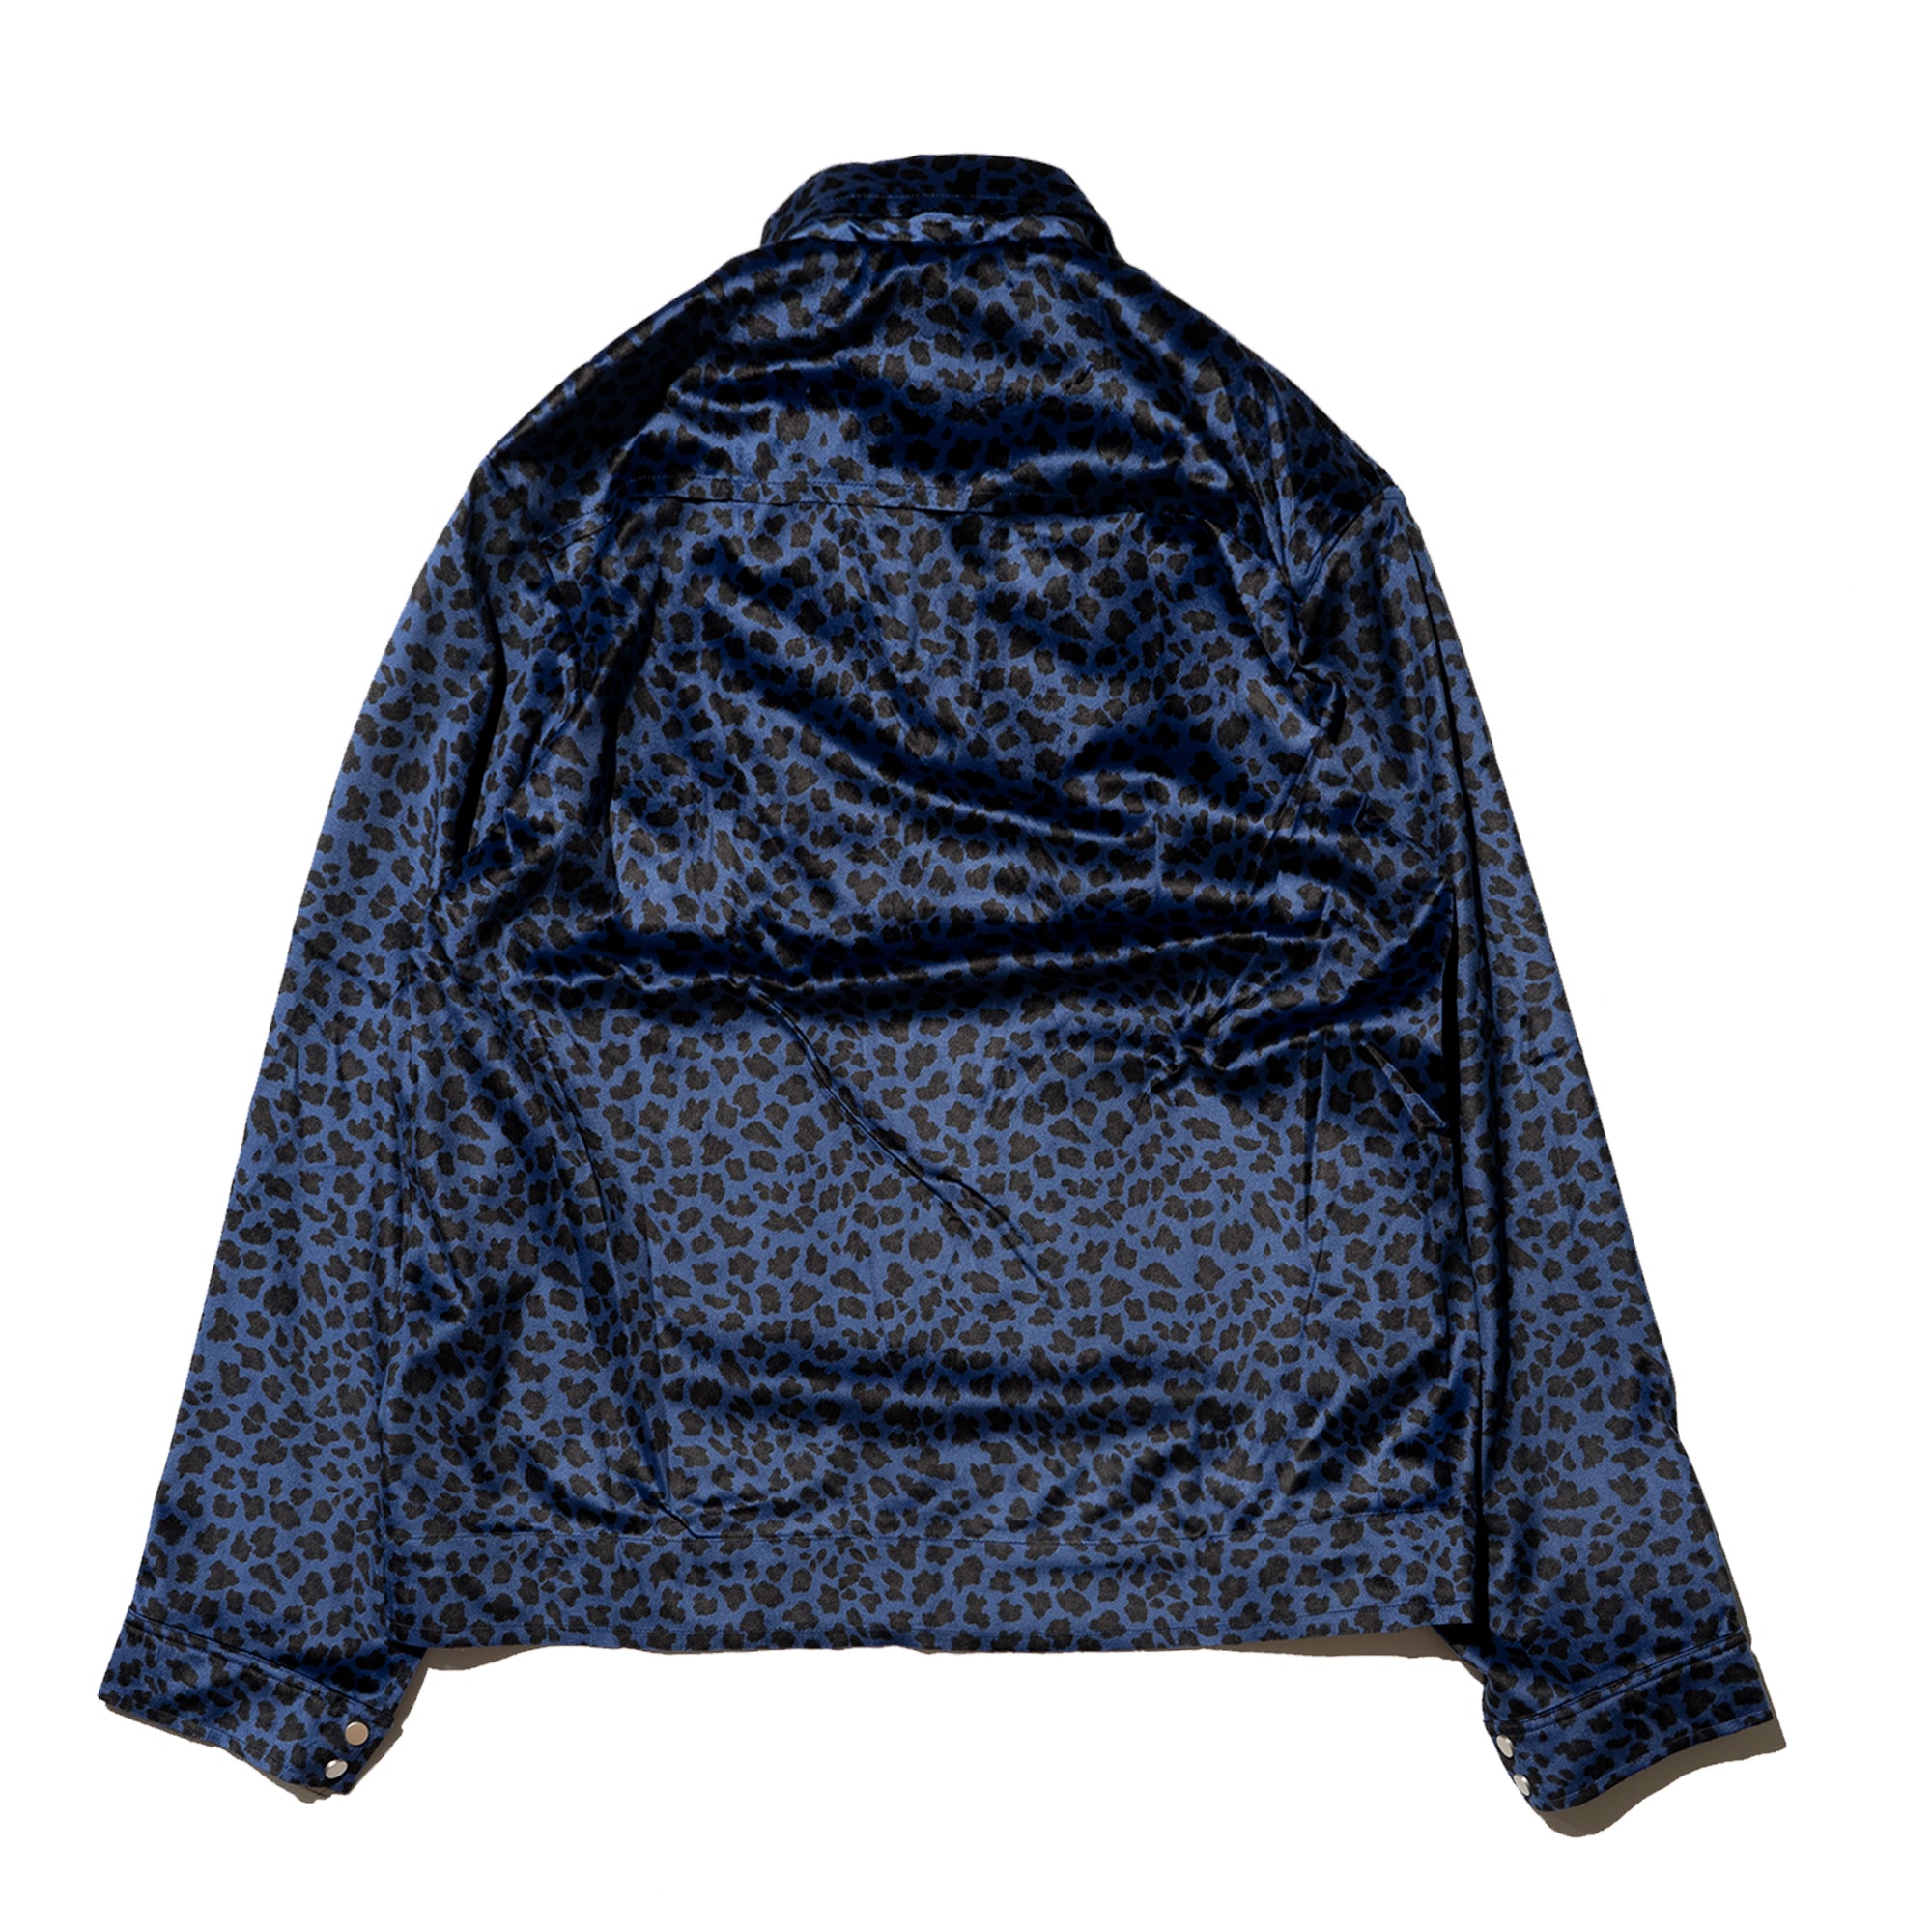 leopard zip-up jacket